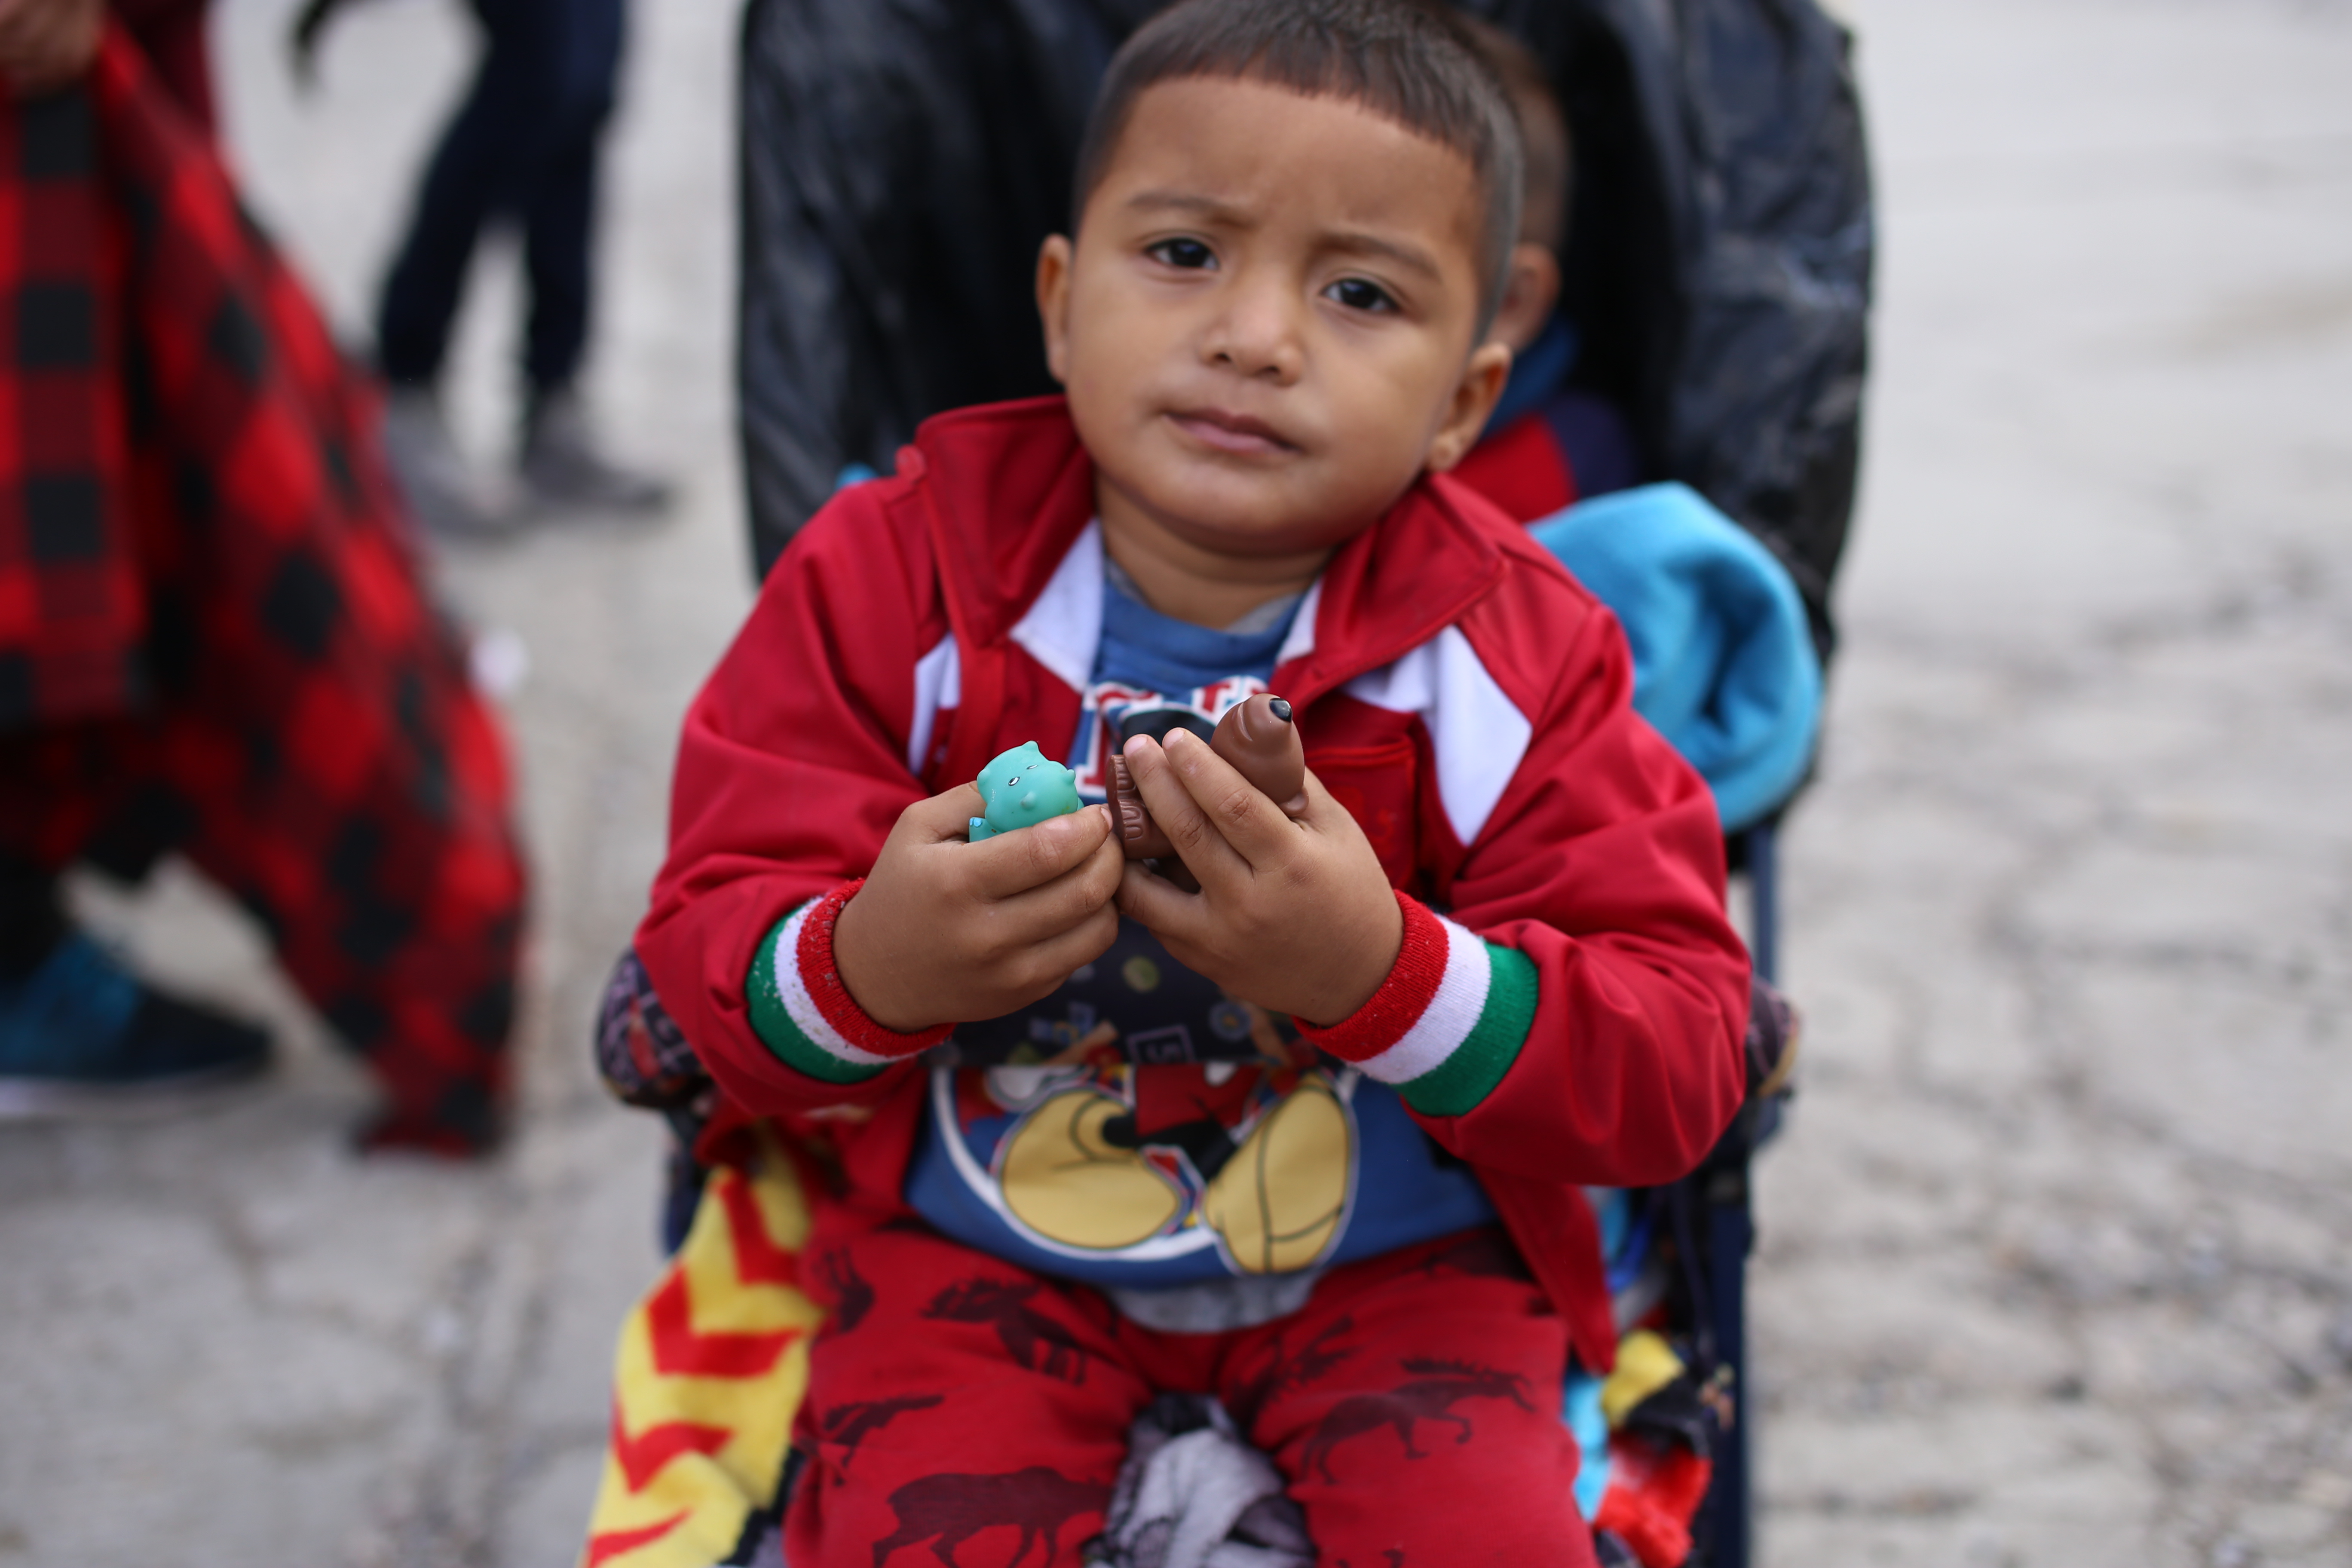 Un niño migrante viaja en una de las caravanas que desde el año pasado se han formado en Honduras. Las autoridades temen que muchos menores sean llevados a EE. UU. con fines de explotación. (Foto Prensa Libre: Hemeroteca PL)